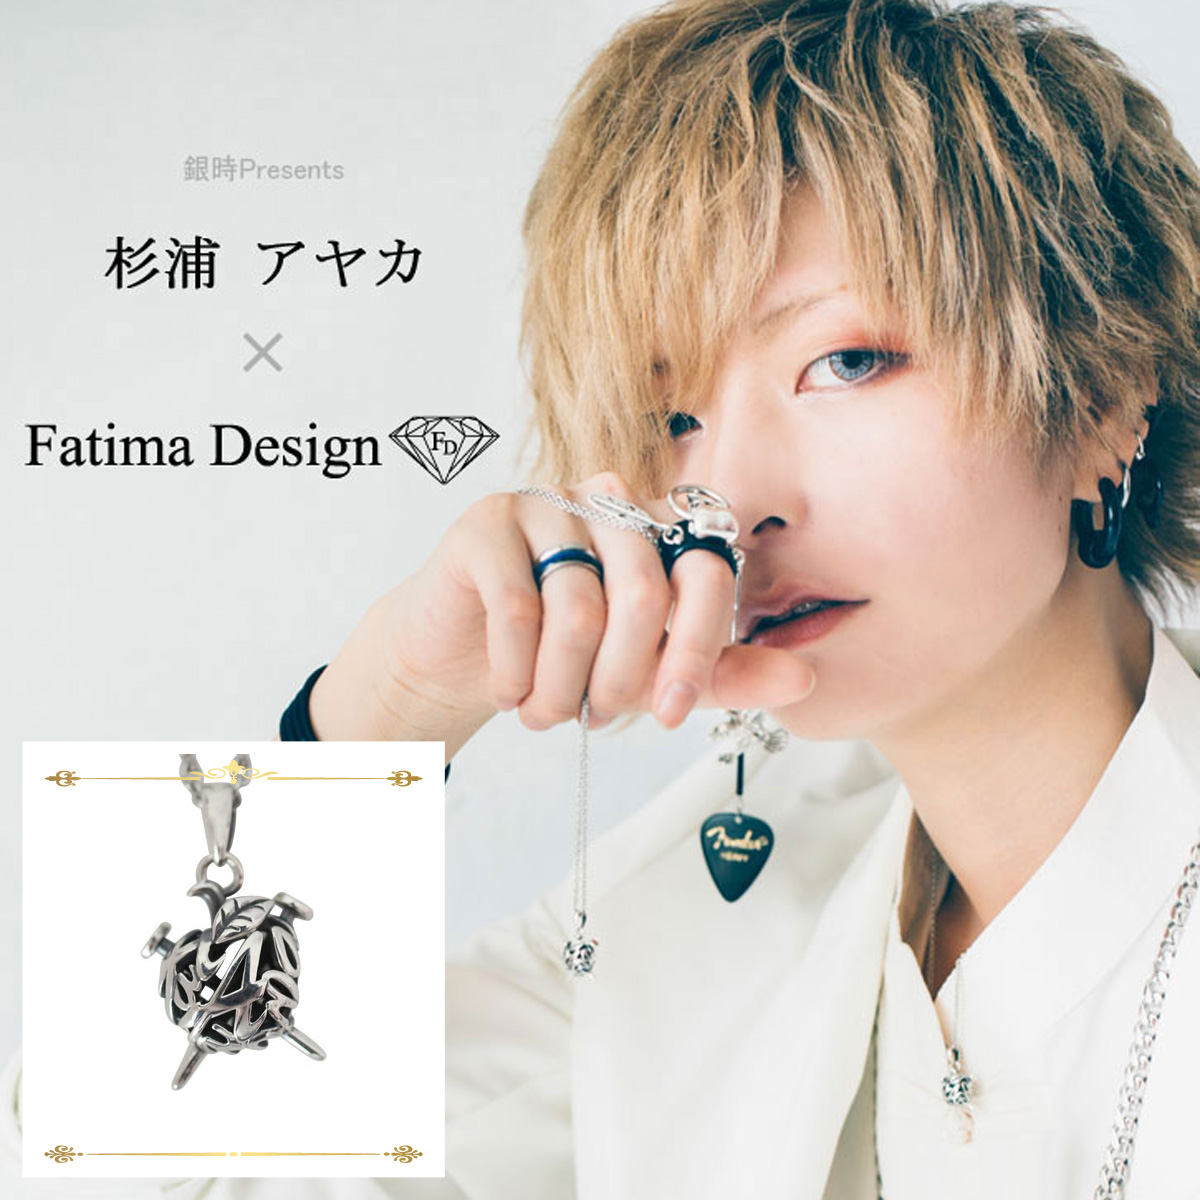 杉浦アヤカ× Fatima Design